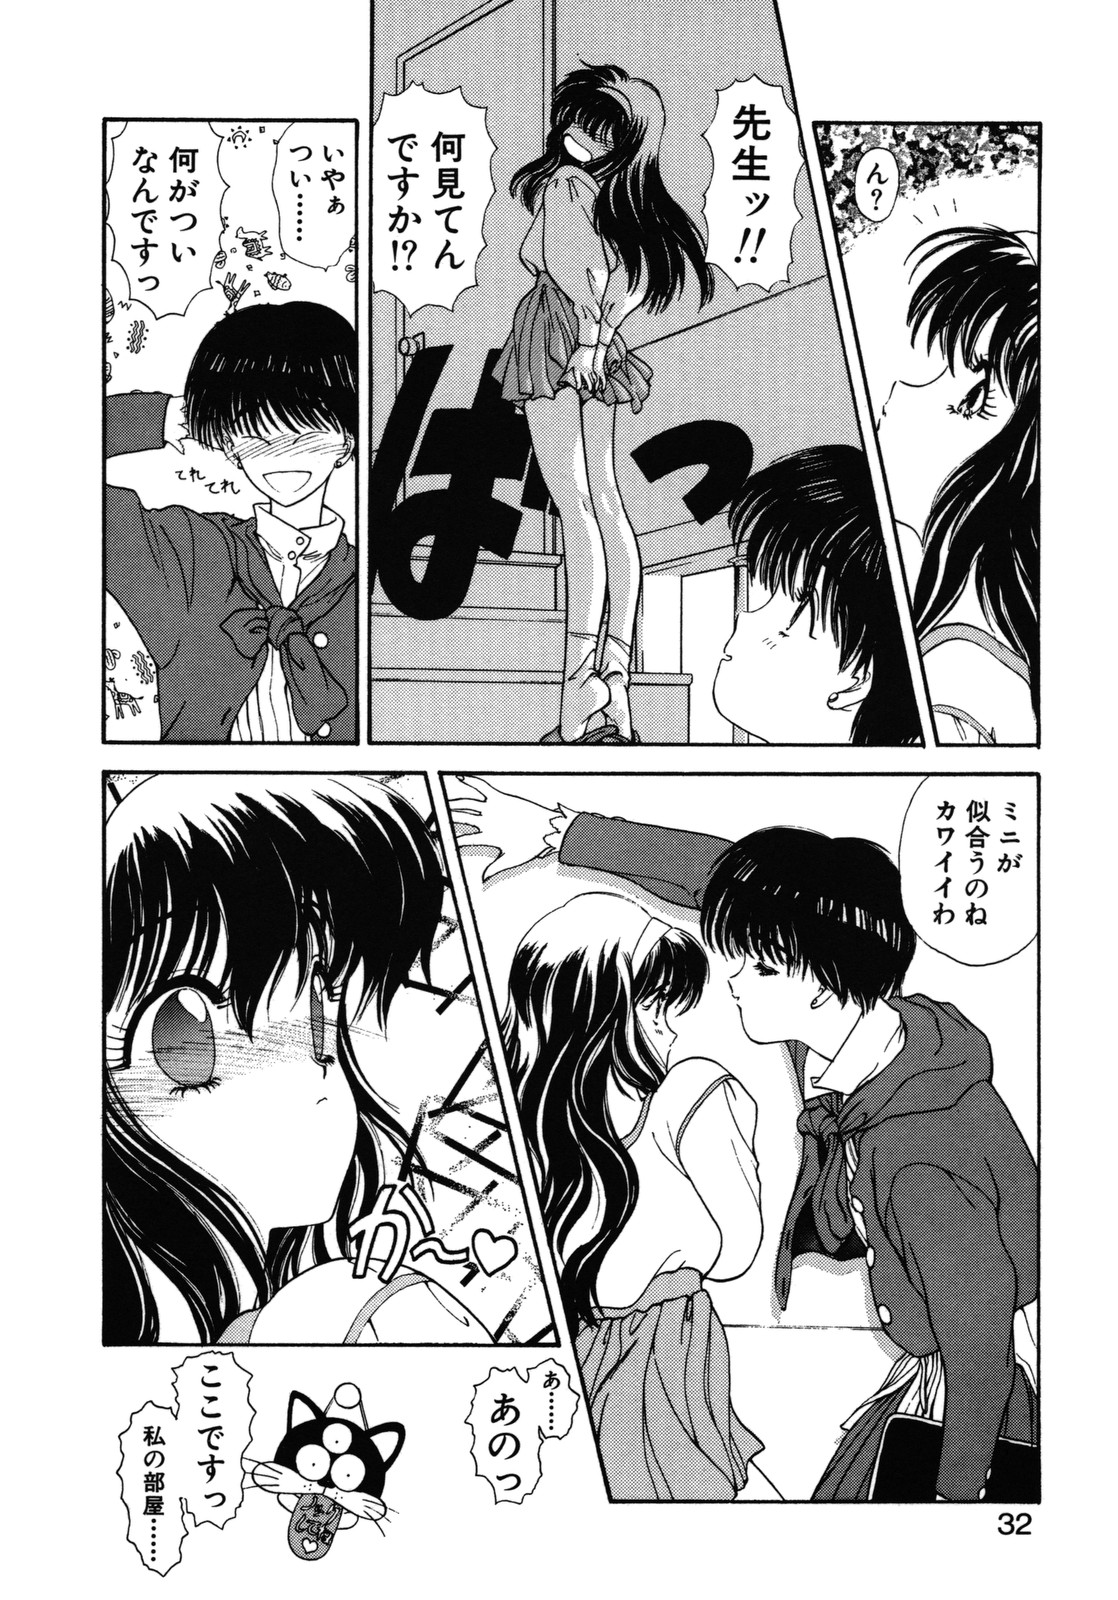 [Utatane Hiroyuki] COUNT DOWN page 33 full